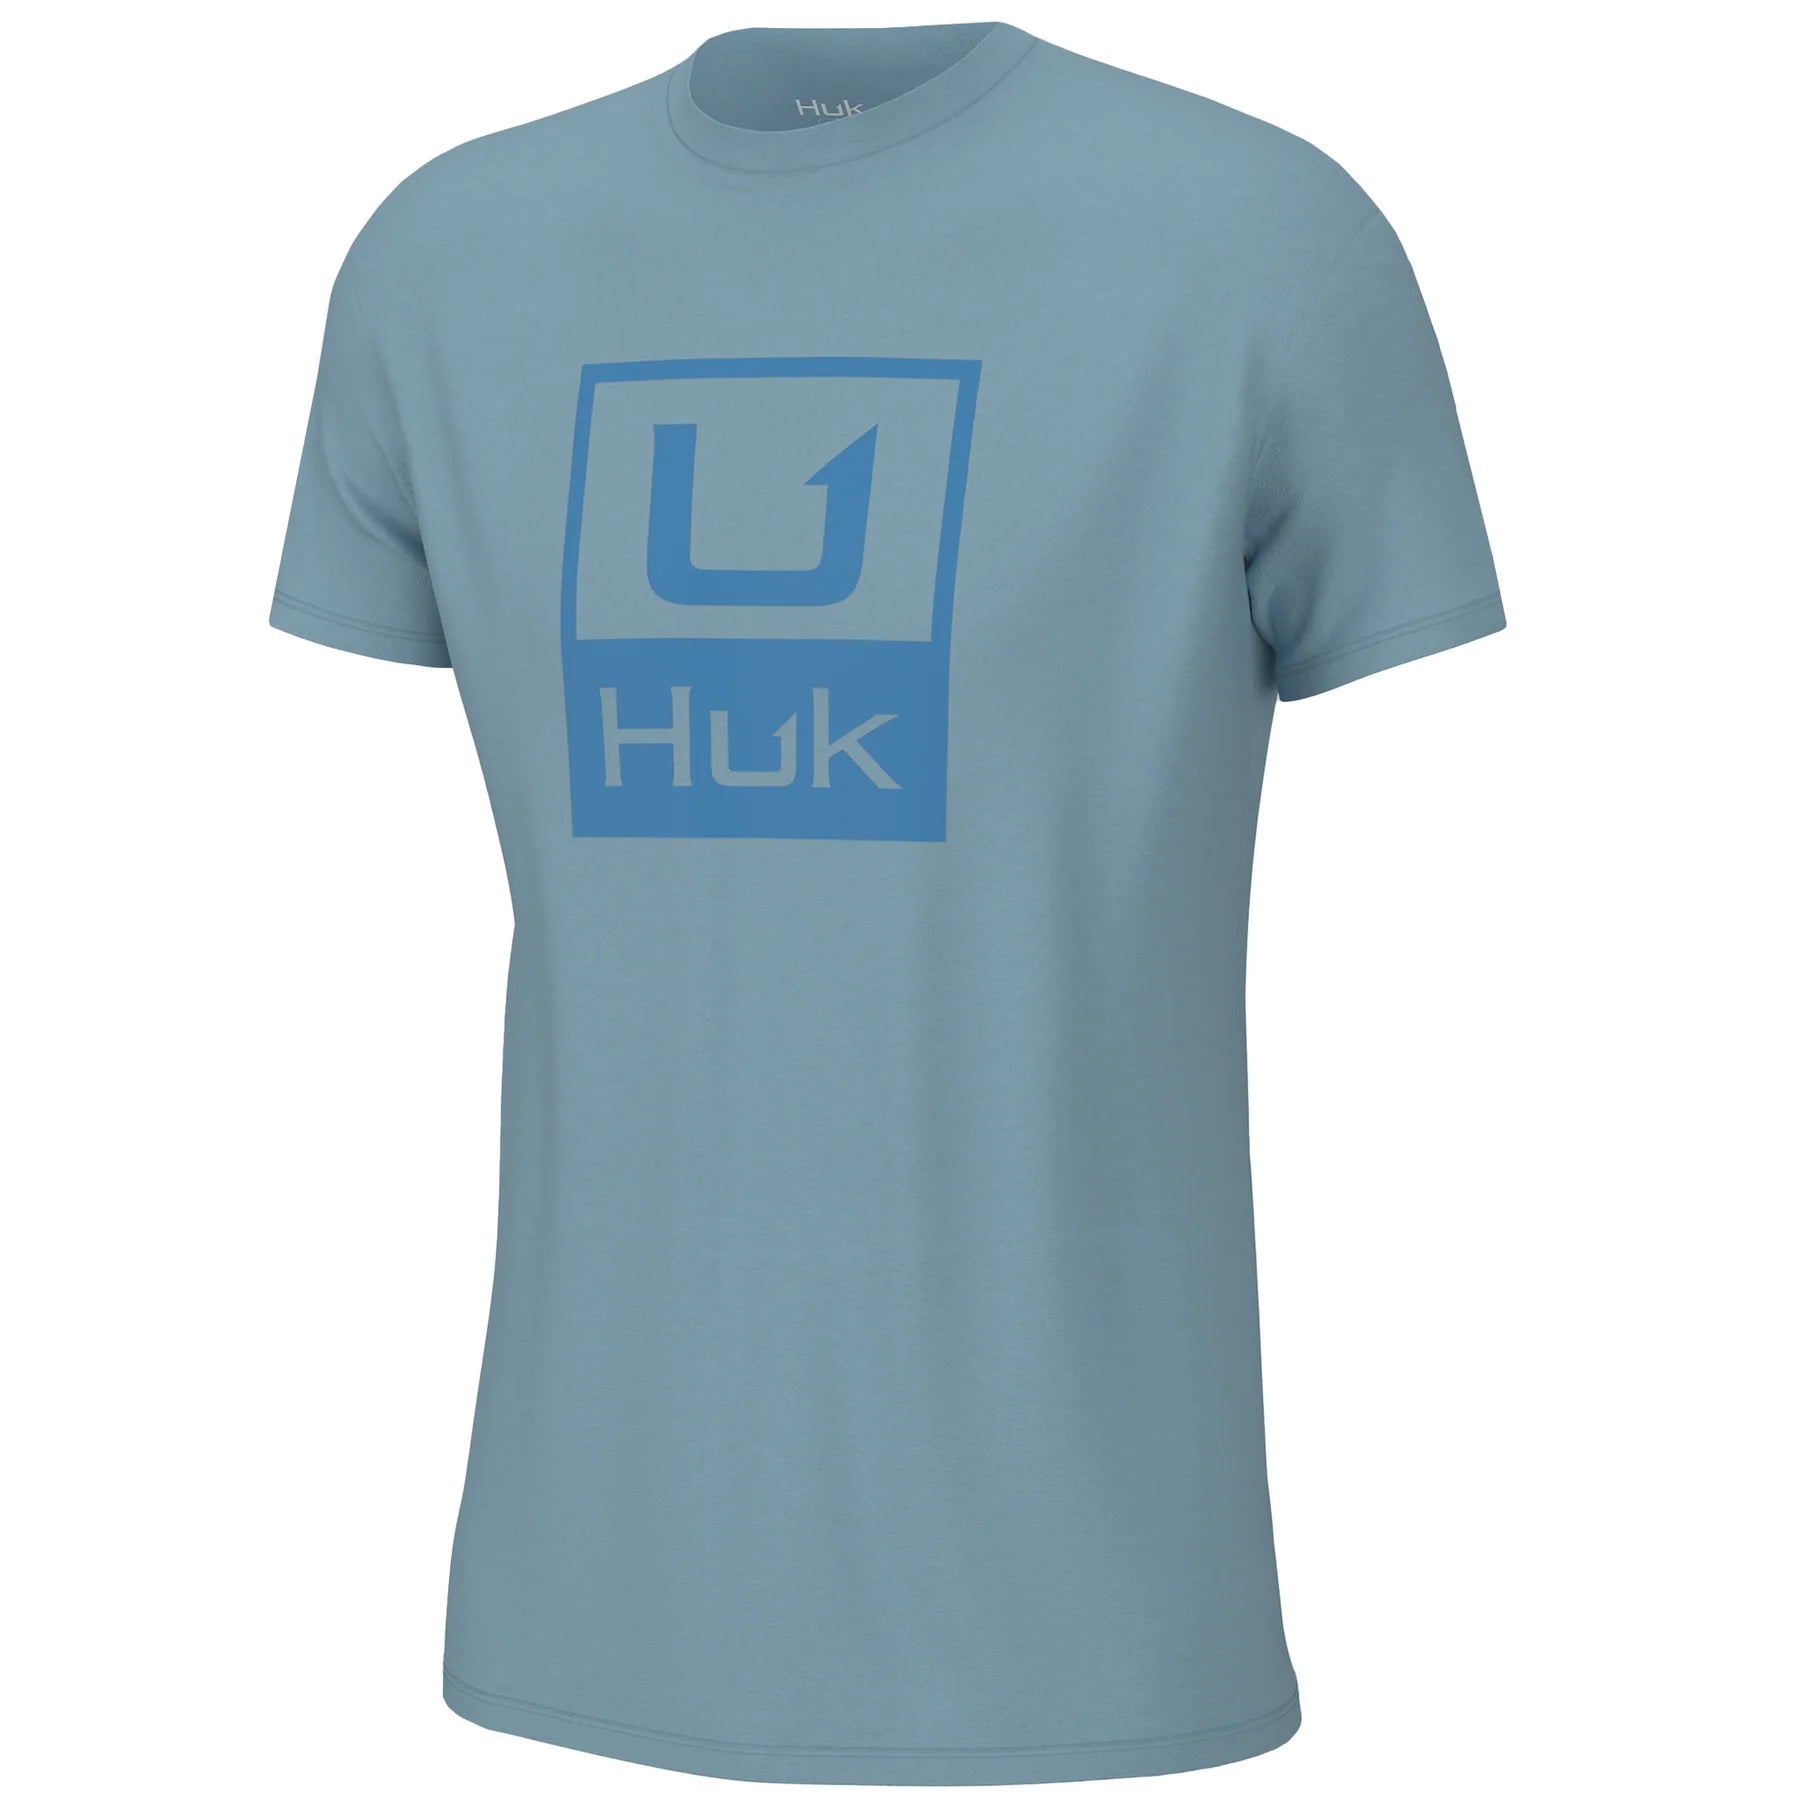 Huk Youth Huk'd Up Logo Tee